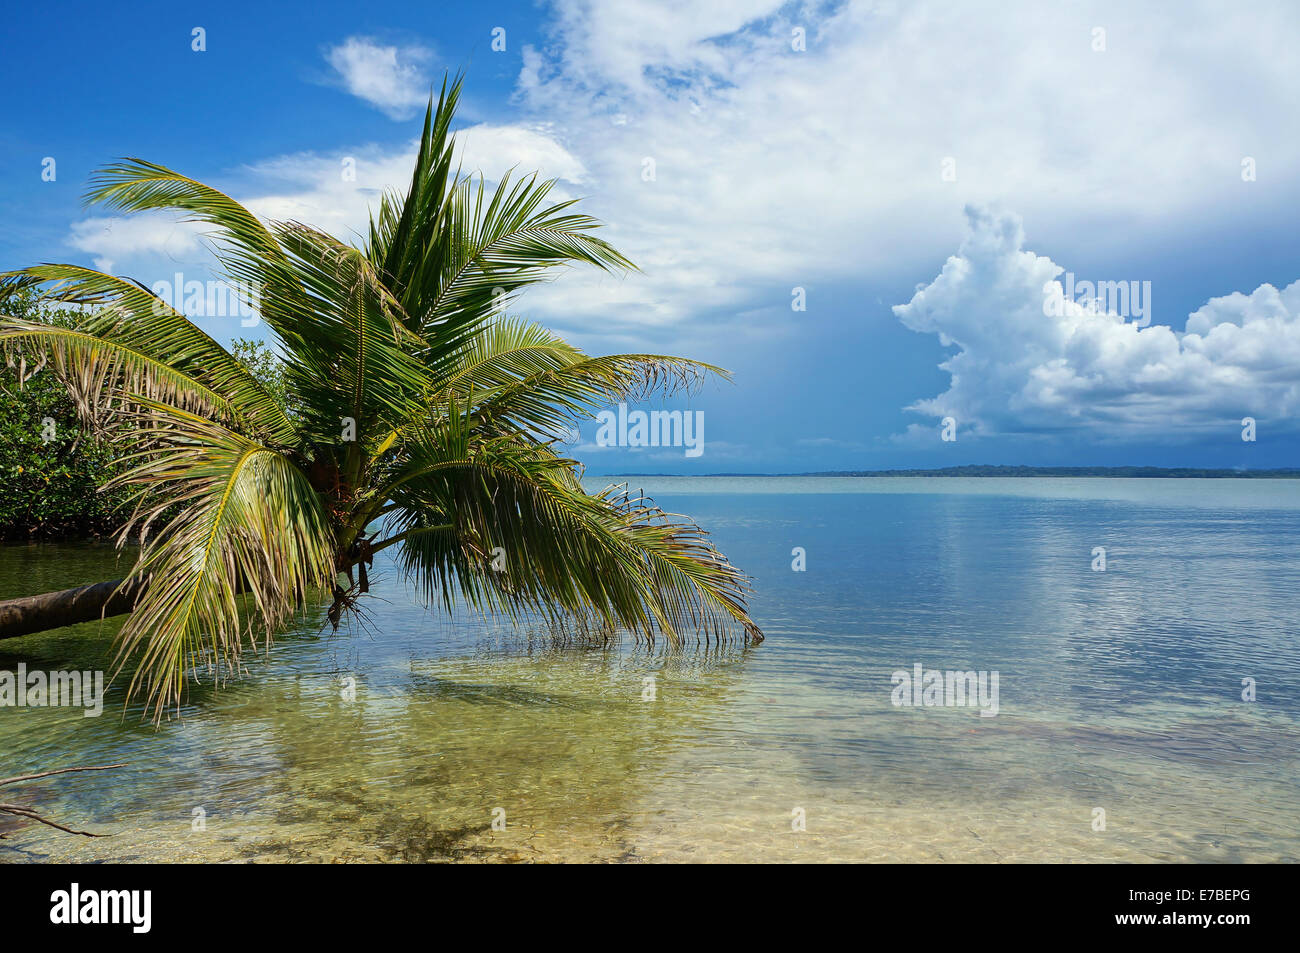 Cocotier penché au-dessus de l'eau calme de la mer des Caraïbes Banque D'Images